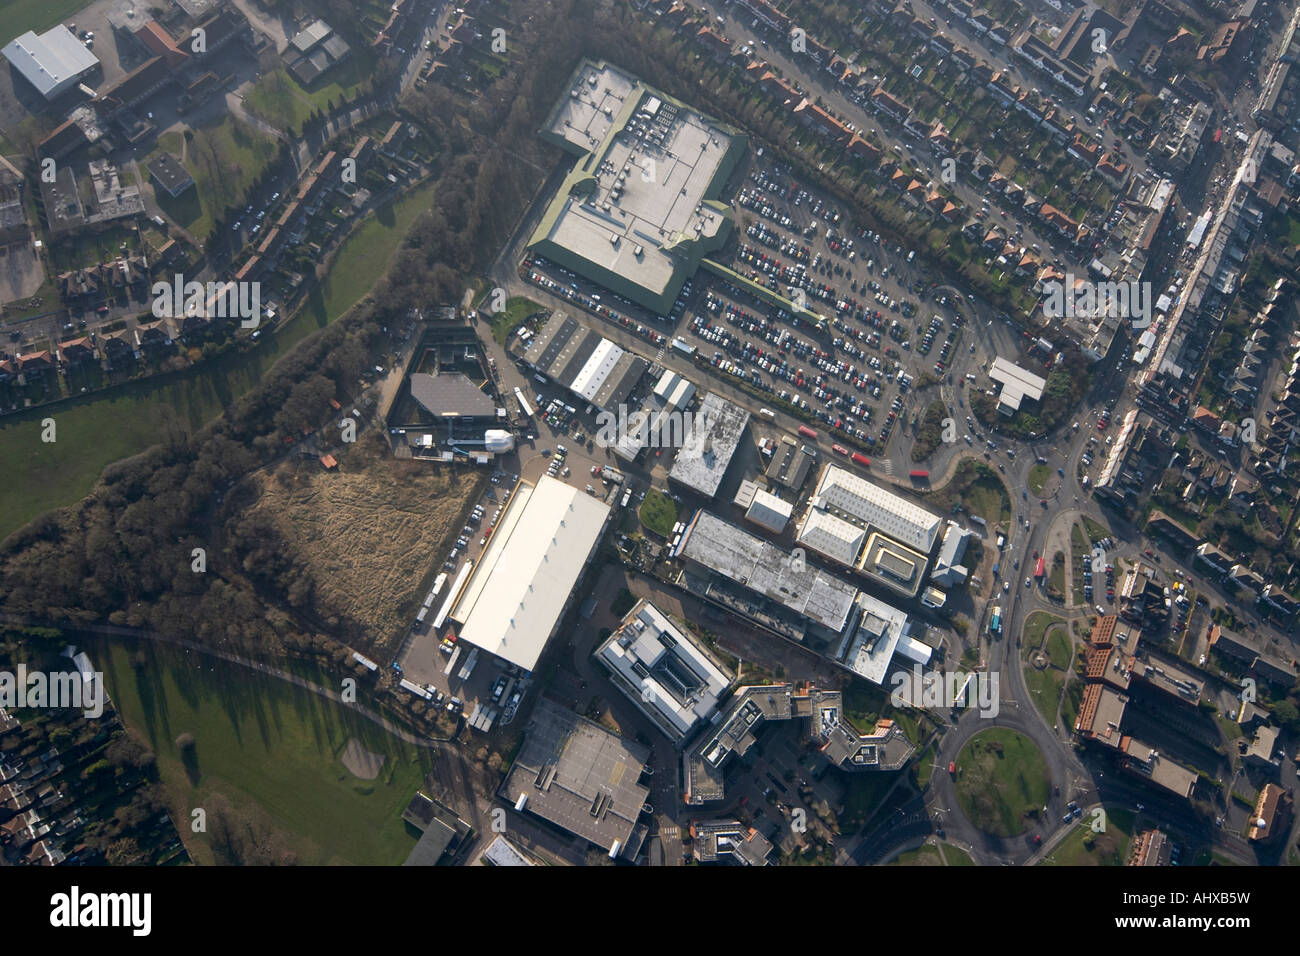 Vue aérienne verticale de haut niveau frais d'Elstree Studios et Big Brother House Londres WD6 England UK Janvier 2006 Banque D'Images